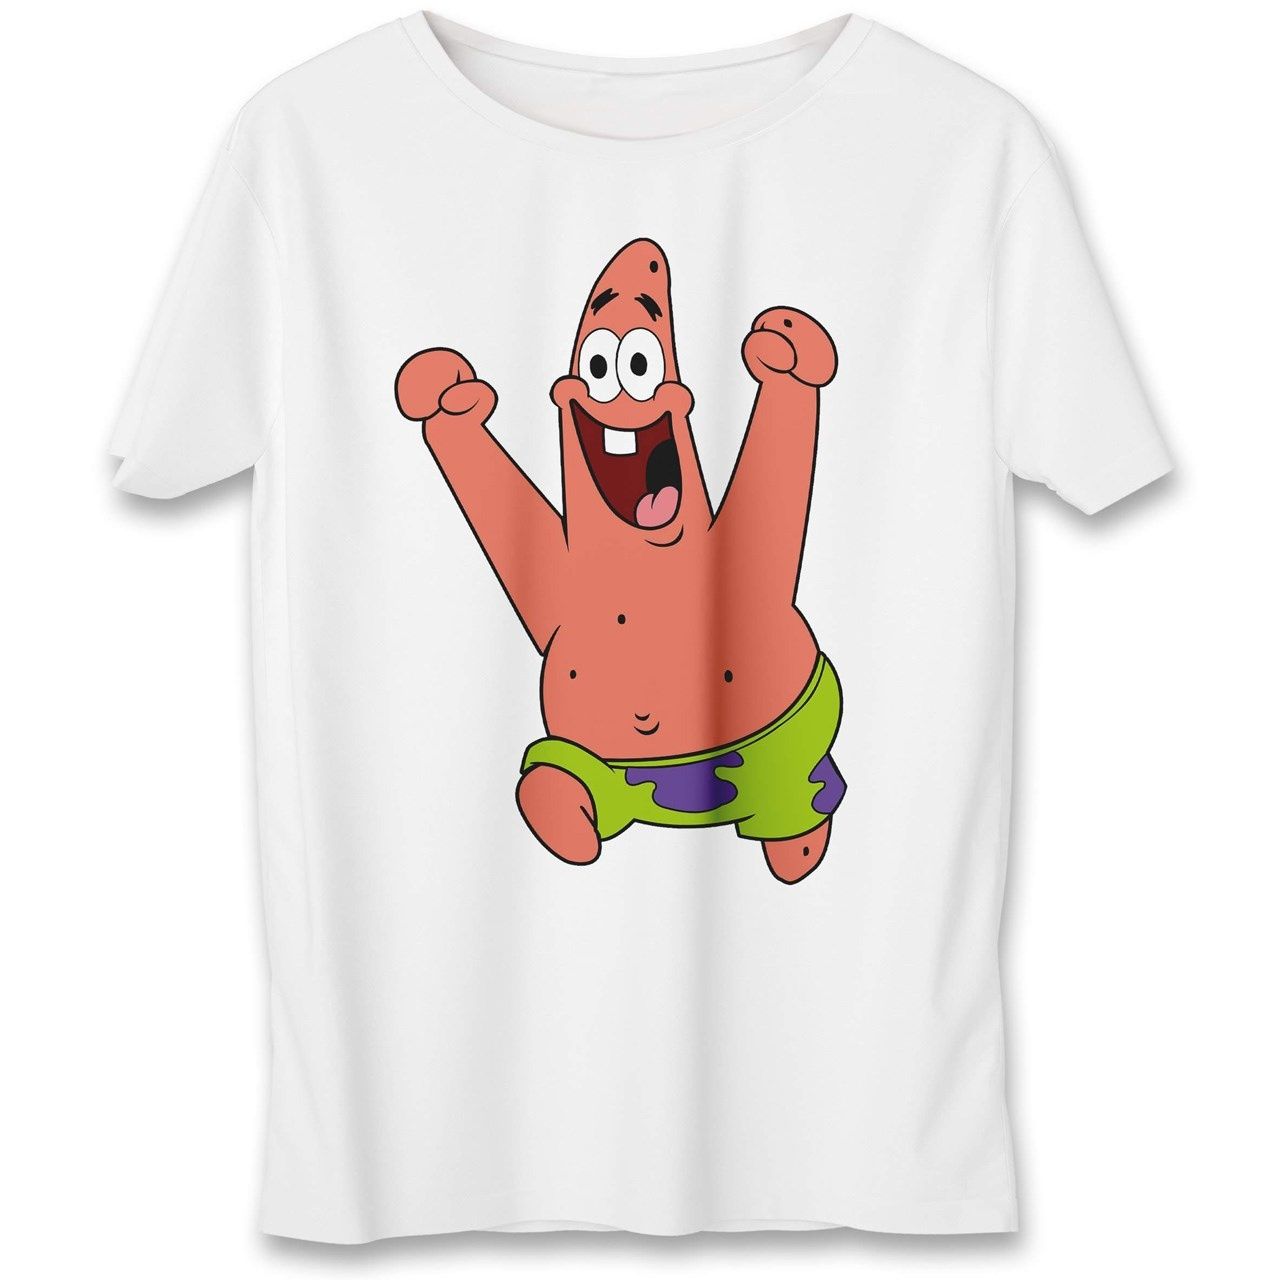 تی شرت مردانه به رسم طرح پاتریک کد 359 -  - 1